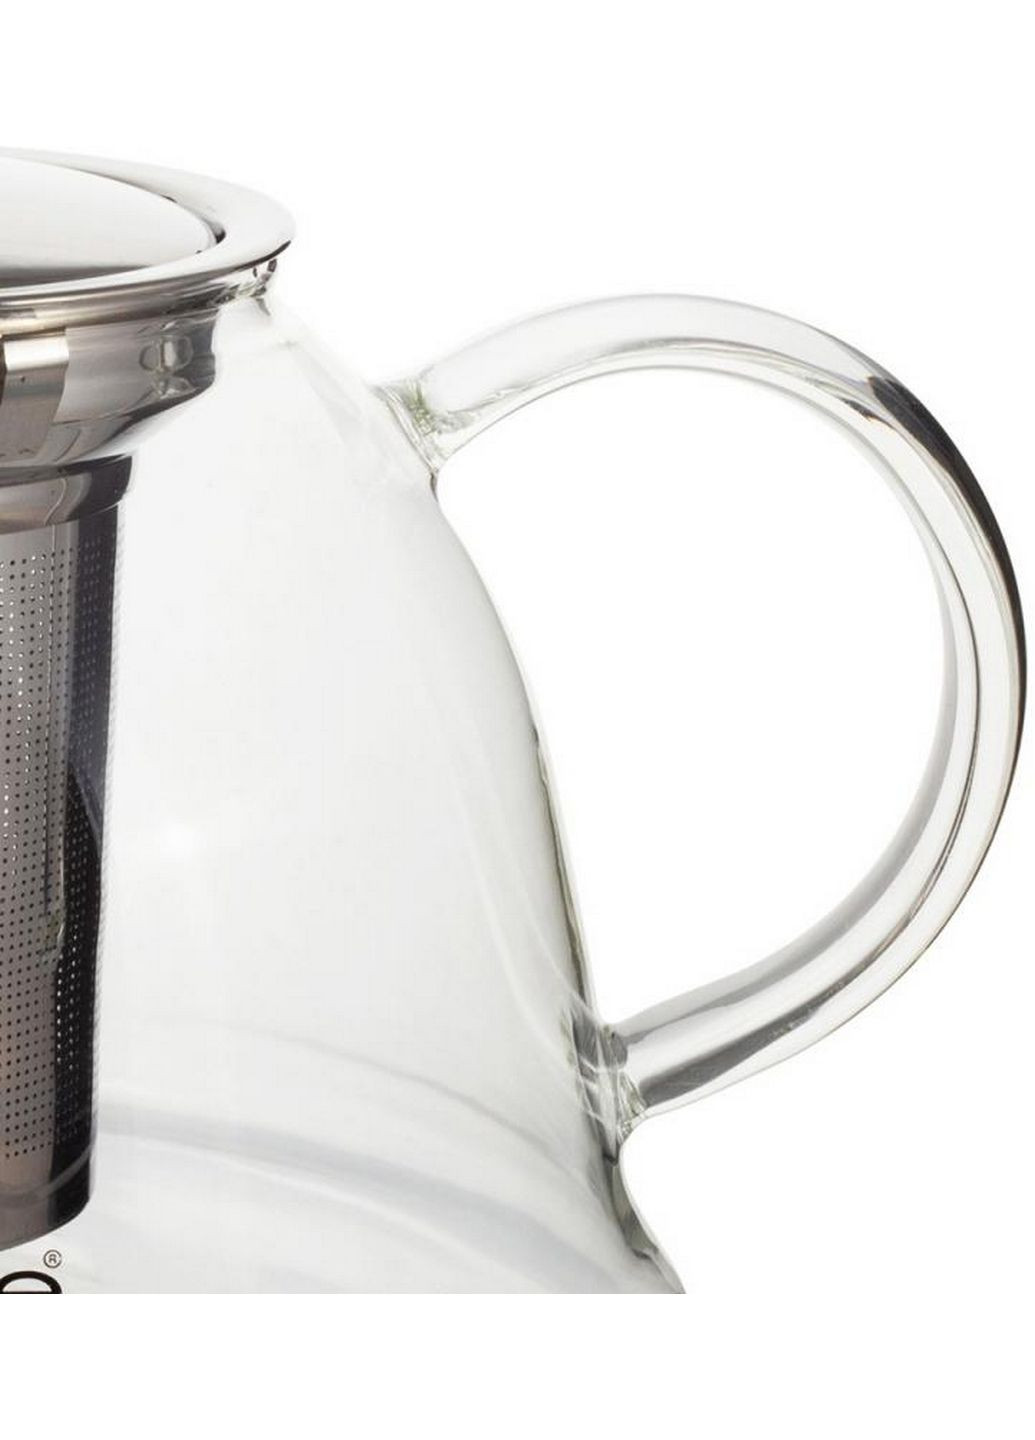 Чайник стеклянный заварочный со съемным ситечком Kamille (282594389)